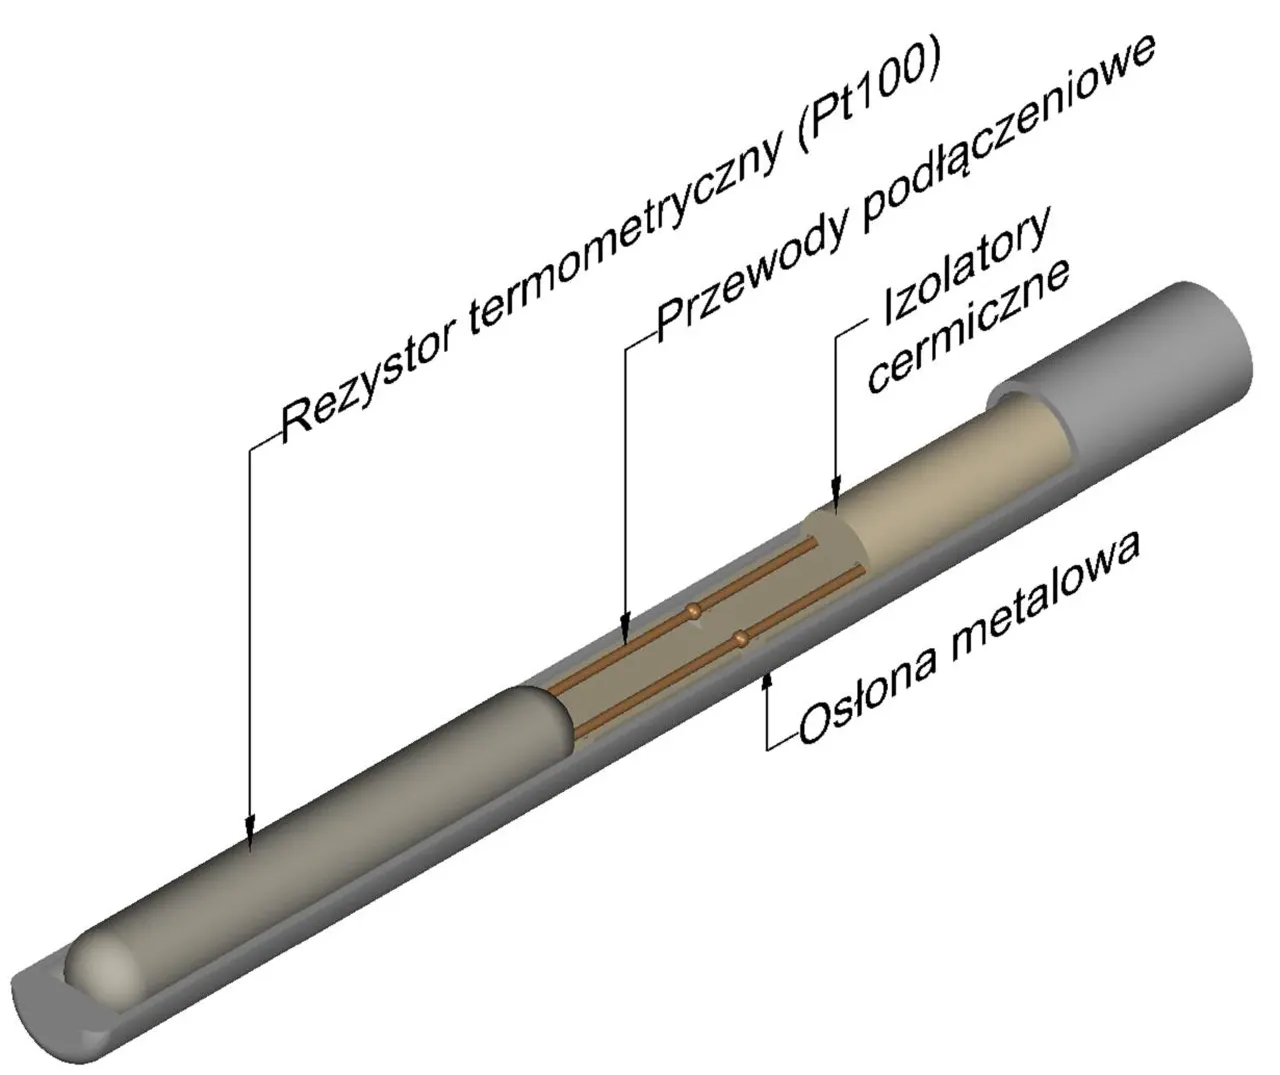 Budowa czujnika termorezystancyjnego RTD (Pt100) -http://acse.pl